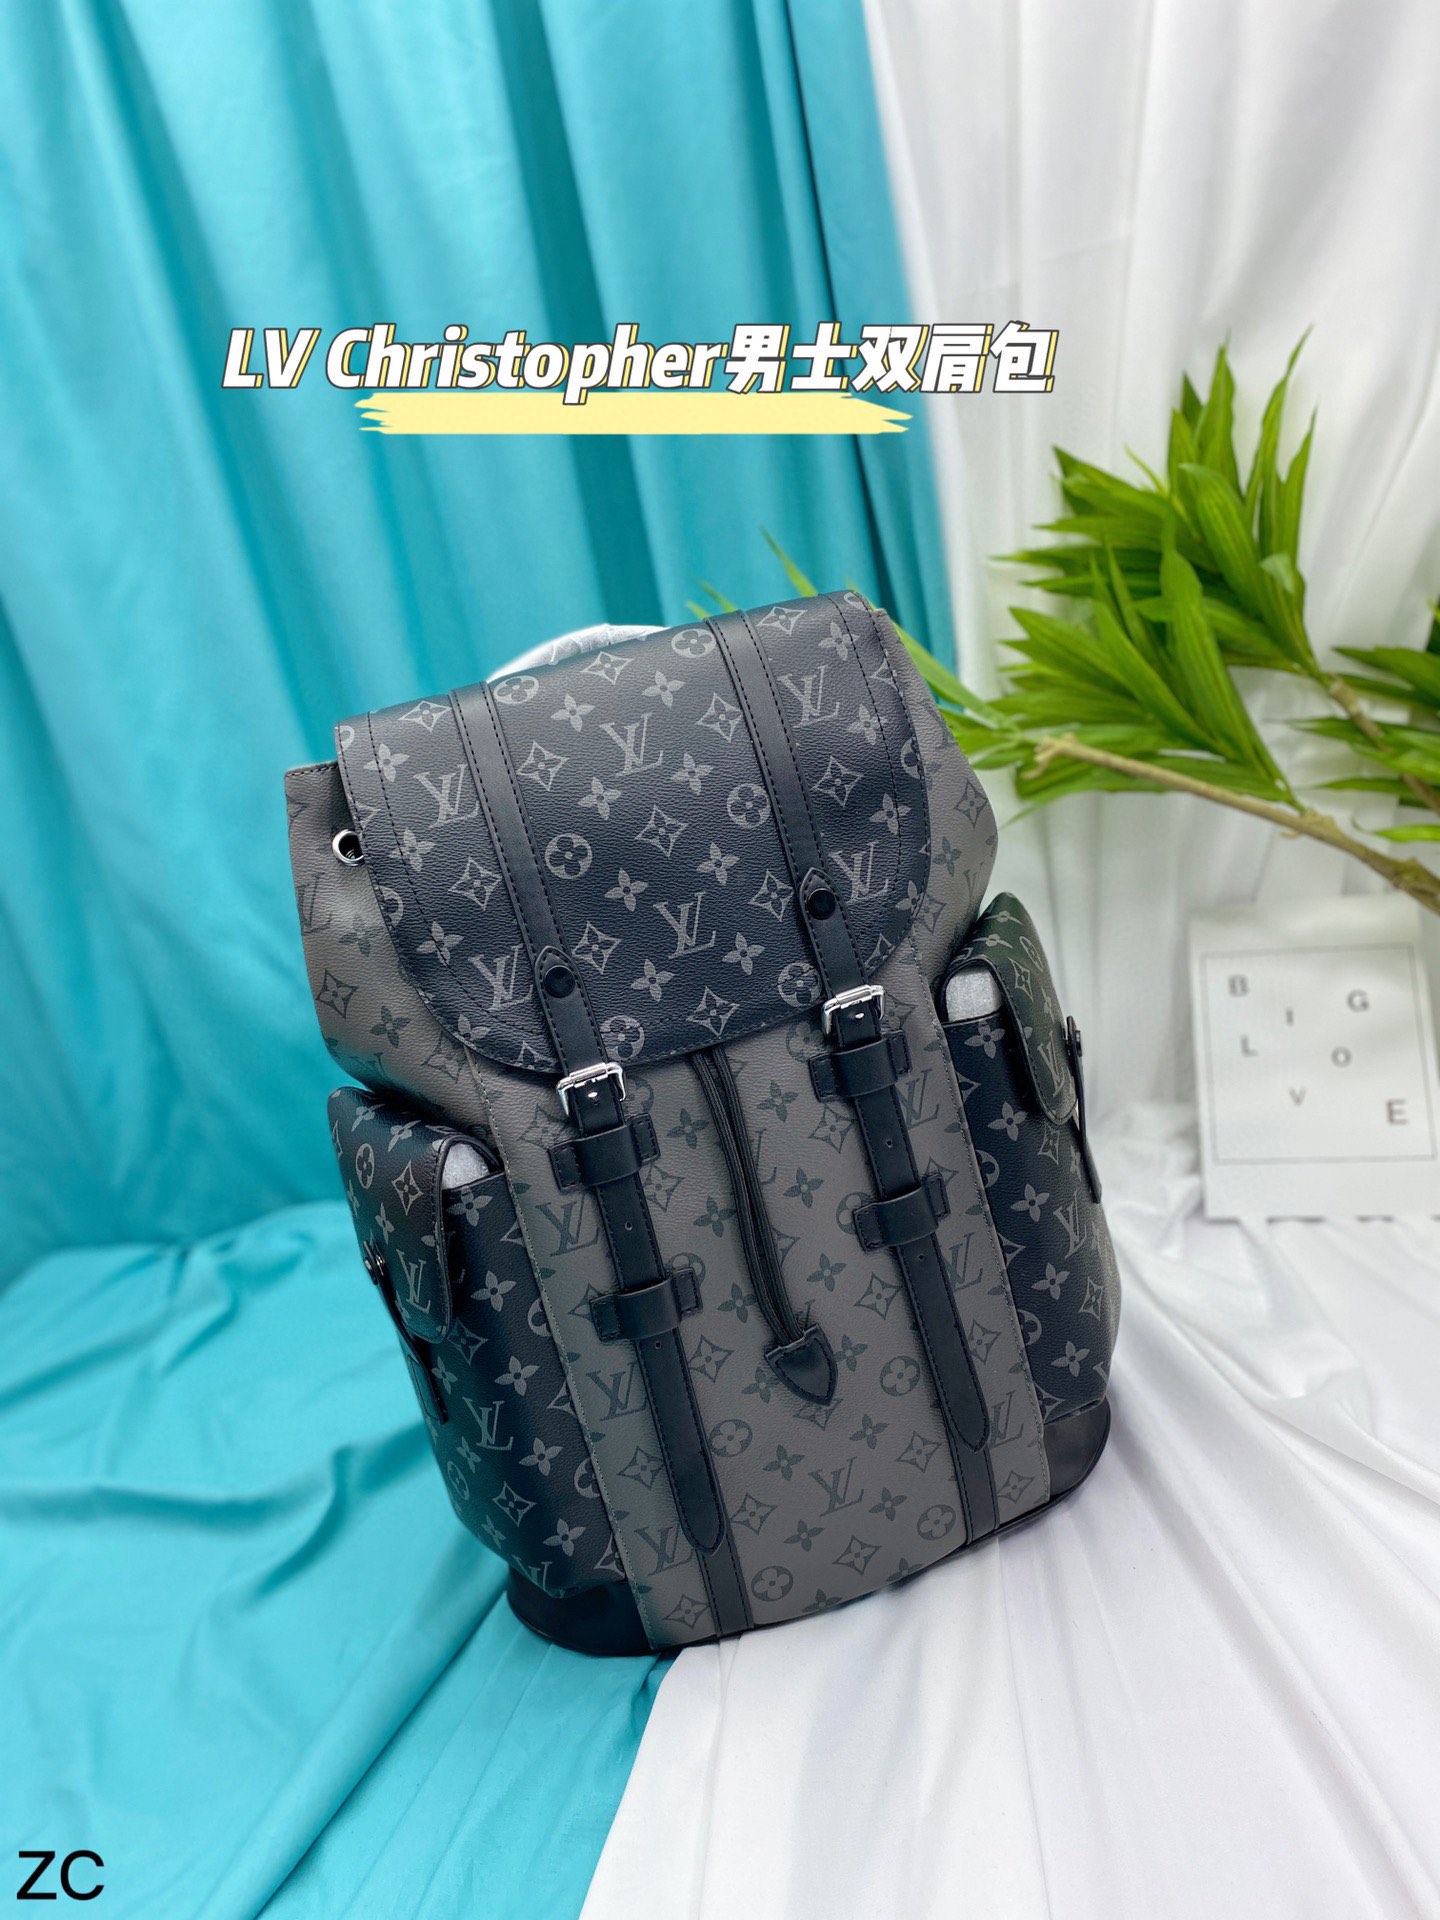 Louis Vuitton LV Christopher Bags Backpack Black Monogram Canvas Cotton Fashion